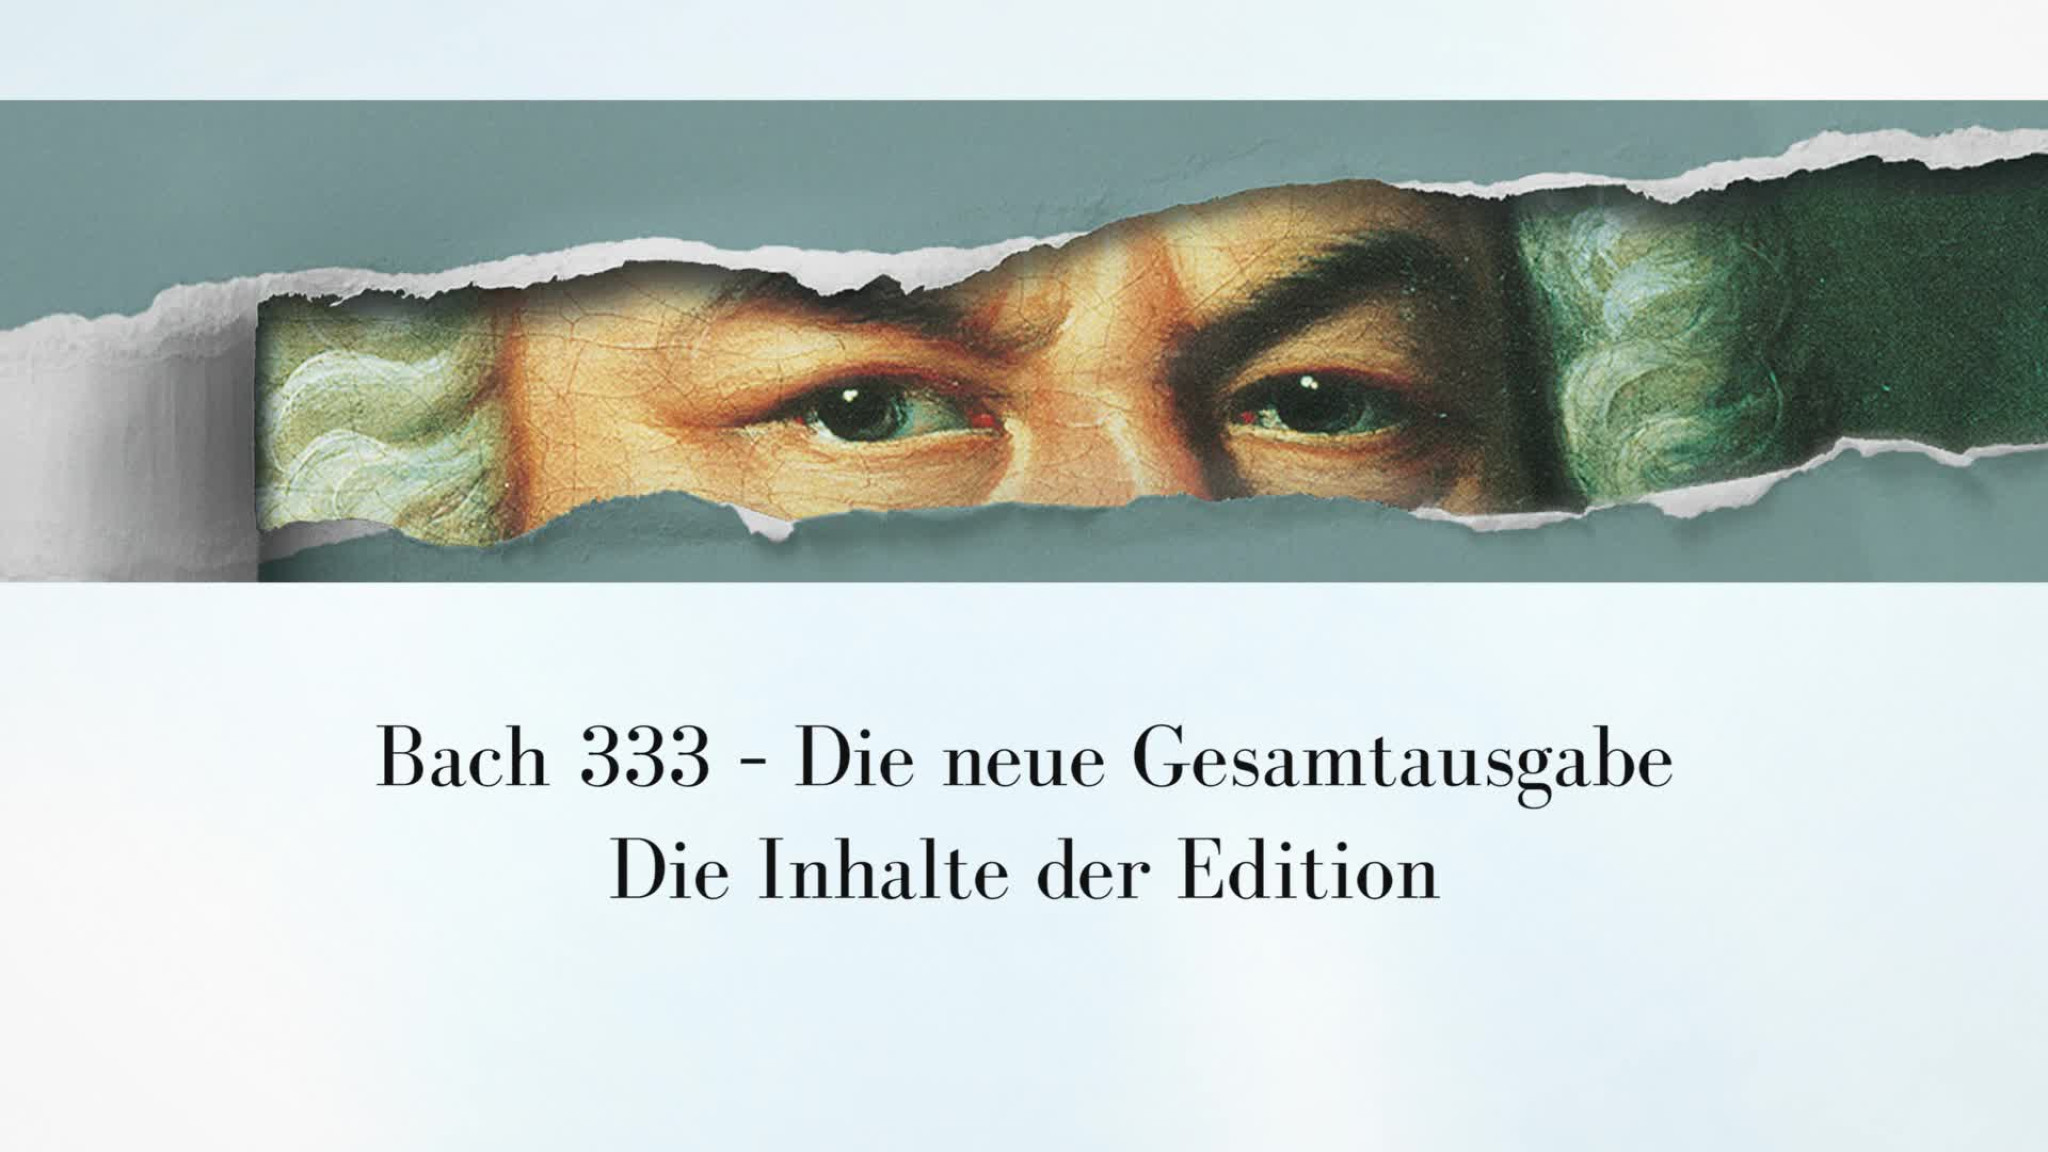 Bach333 - Die Inhalte der Edition